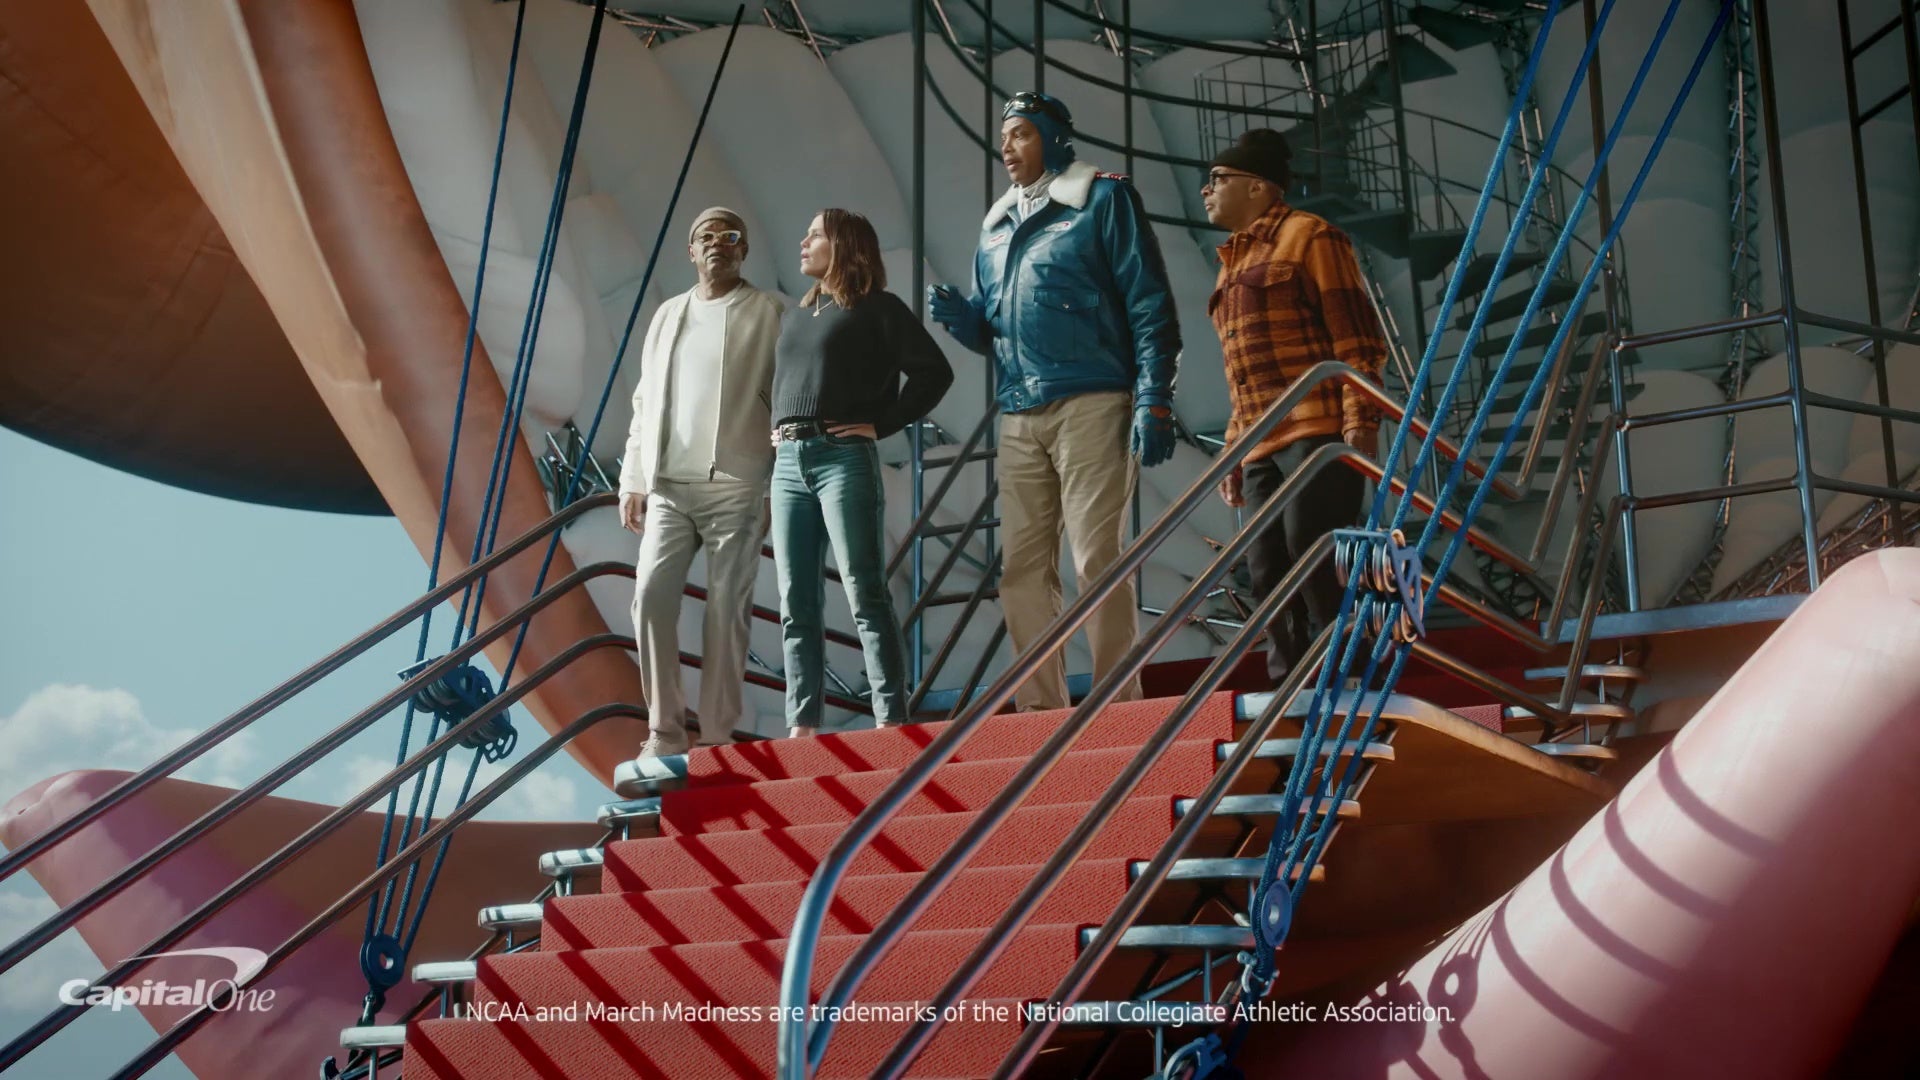 Capital One Commercial: Charles Barkley, Samuel L. Jackson, Spike Lee and Jennifer Garner